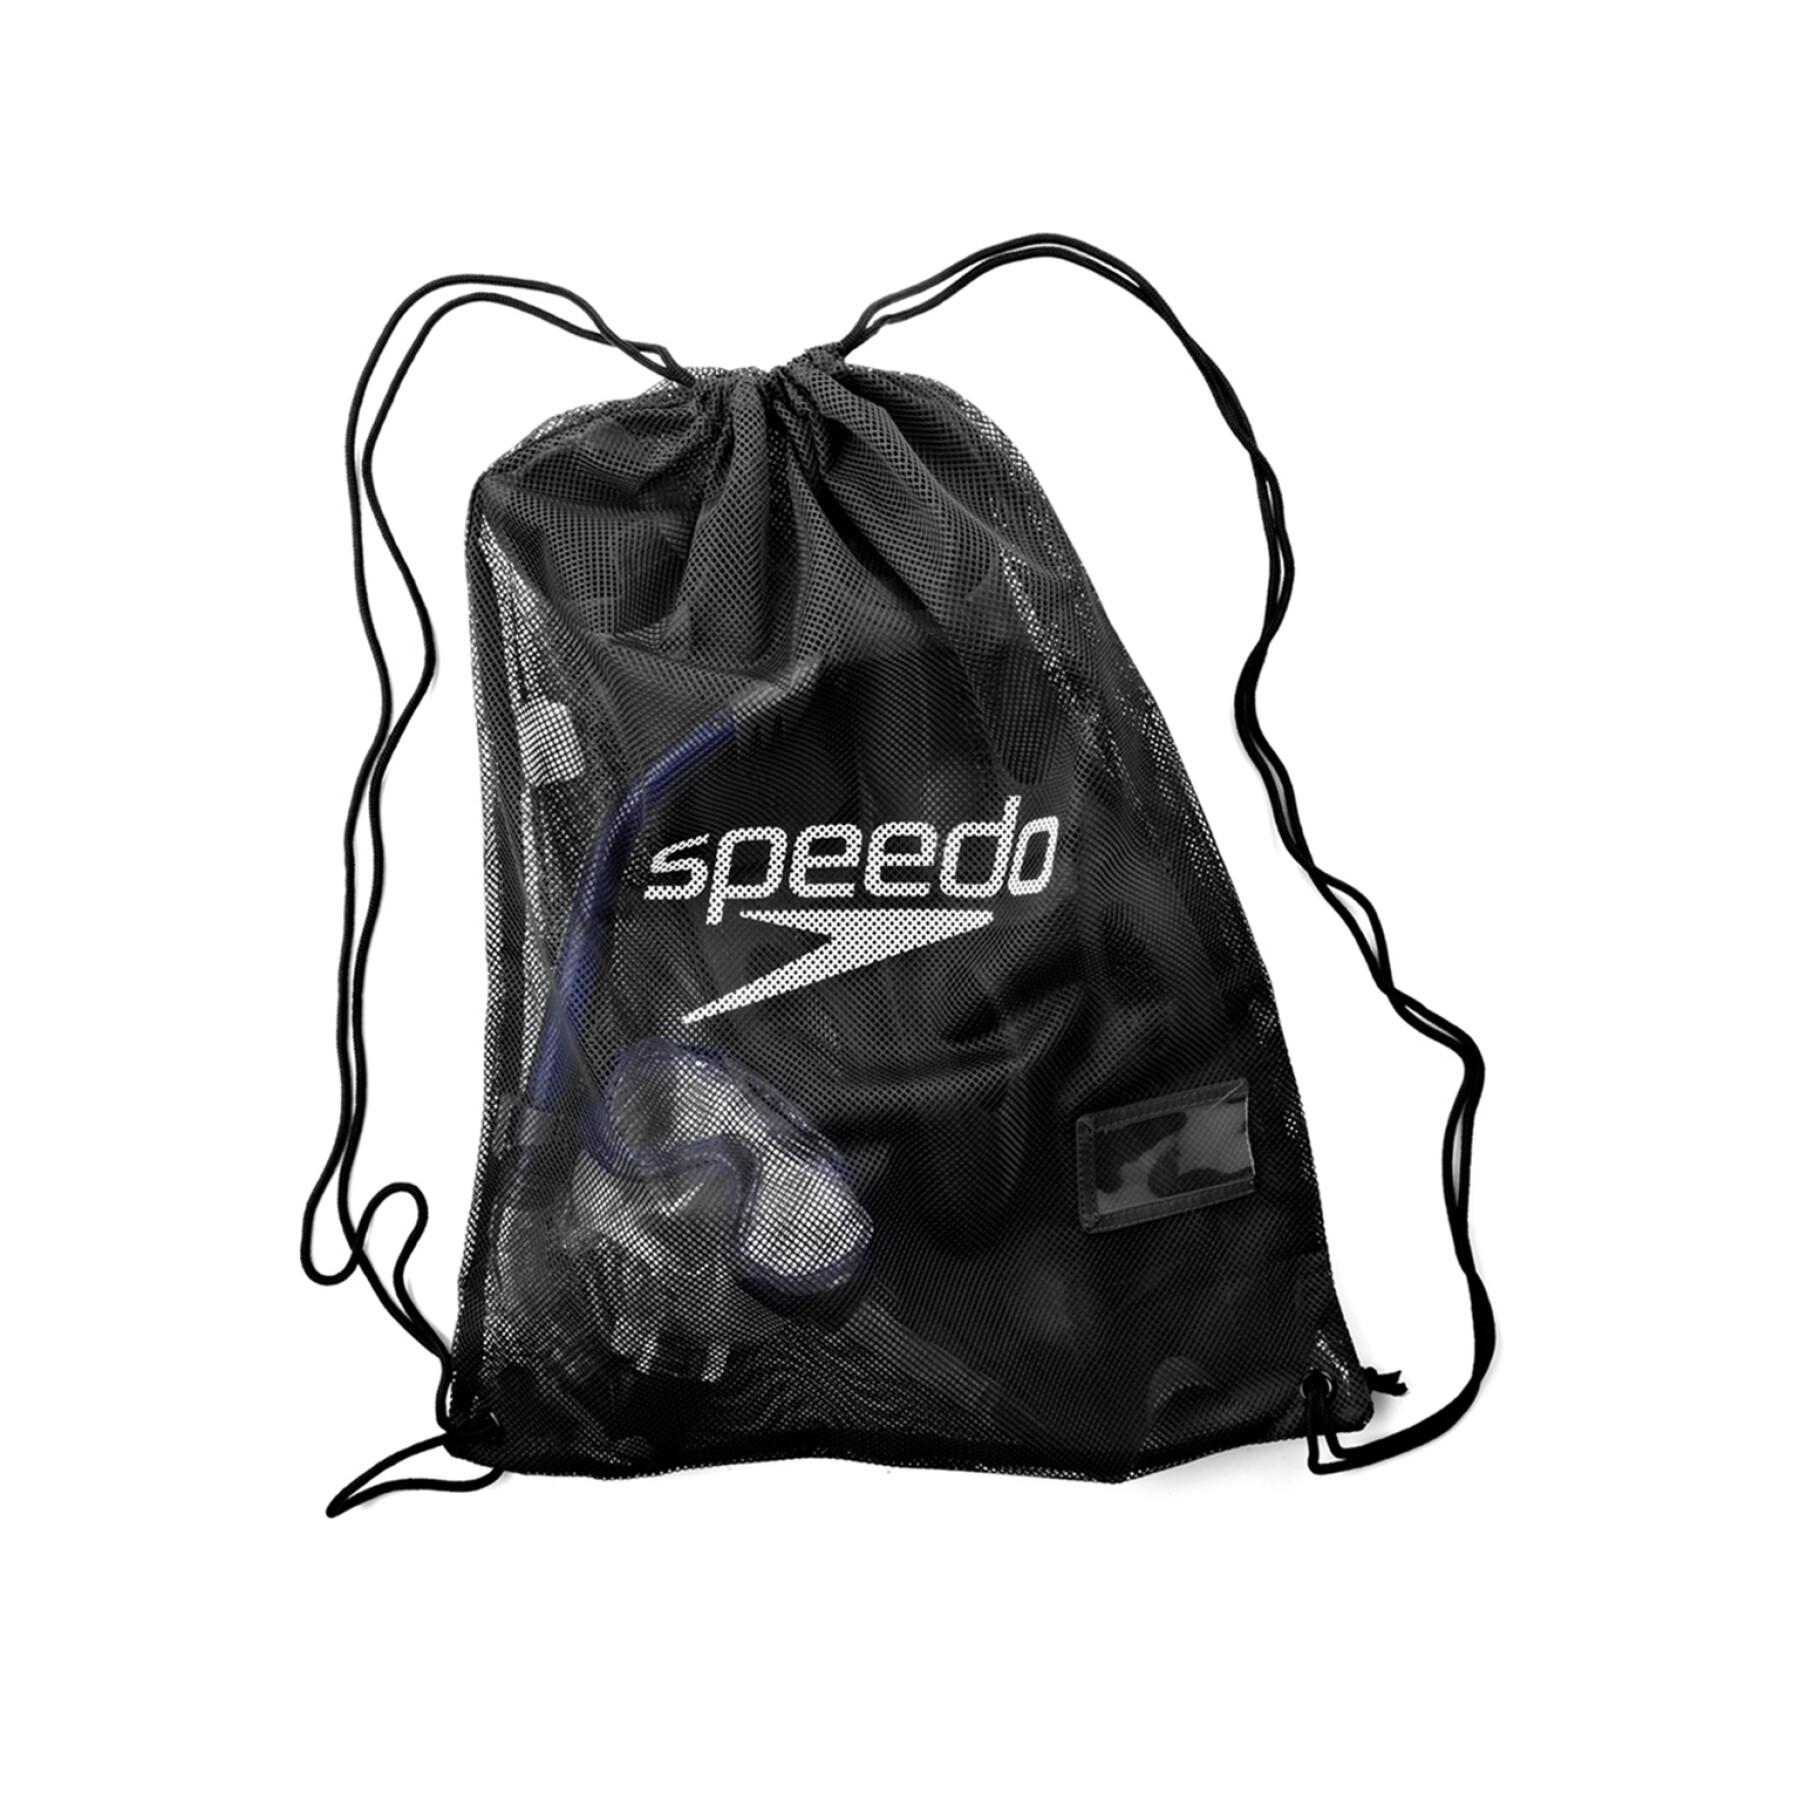 Bolsa de red para equipos Speedo P3